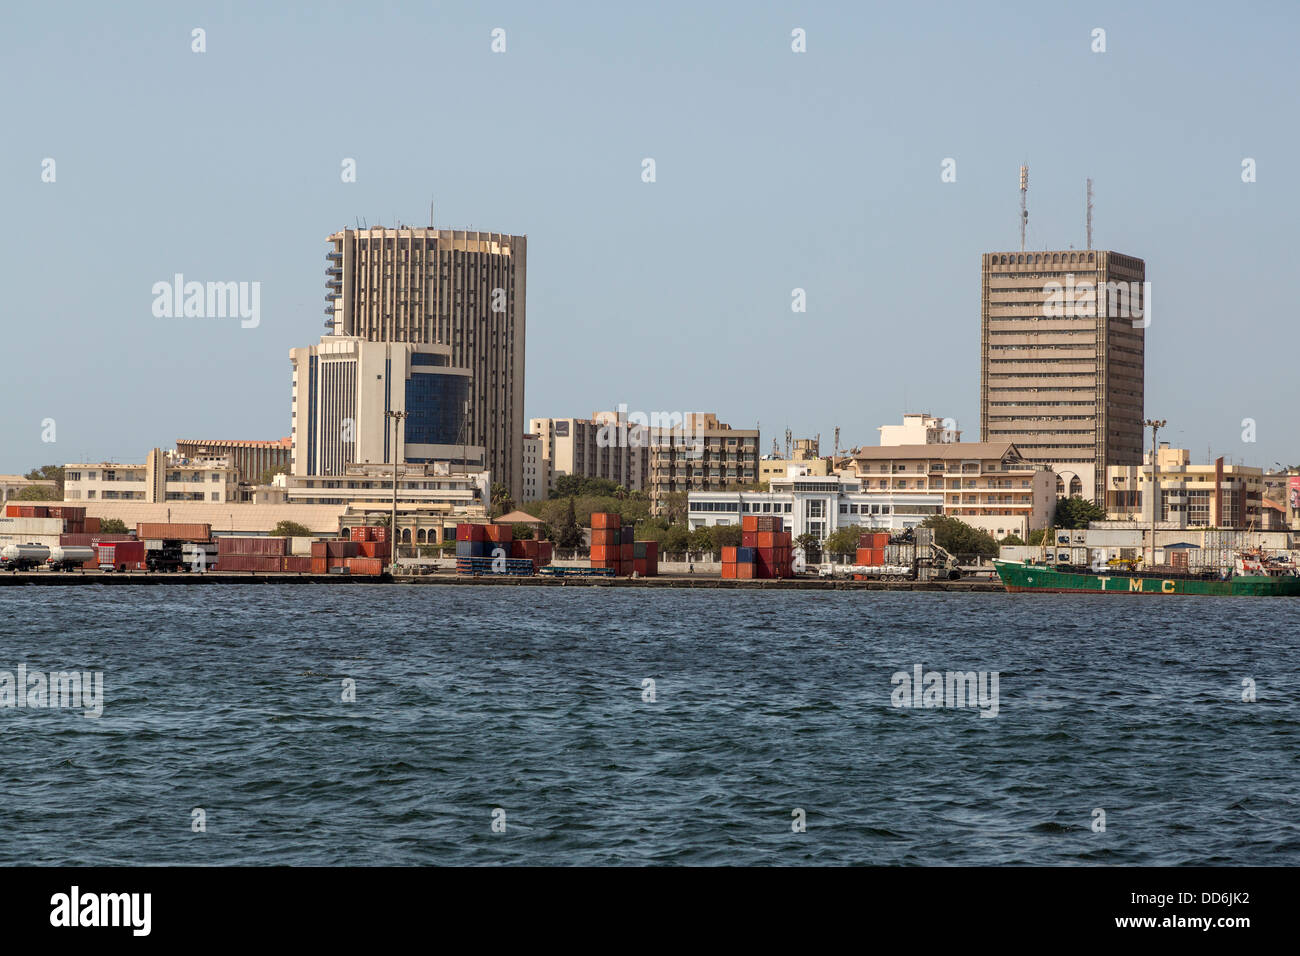 Dakar, Sénégal. Le port de Dakar. Les contenants d'expédition navires attendent sur les quais. Banque D'Images